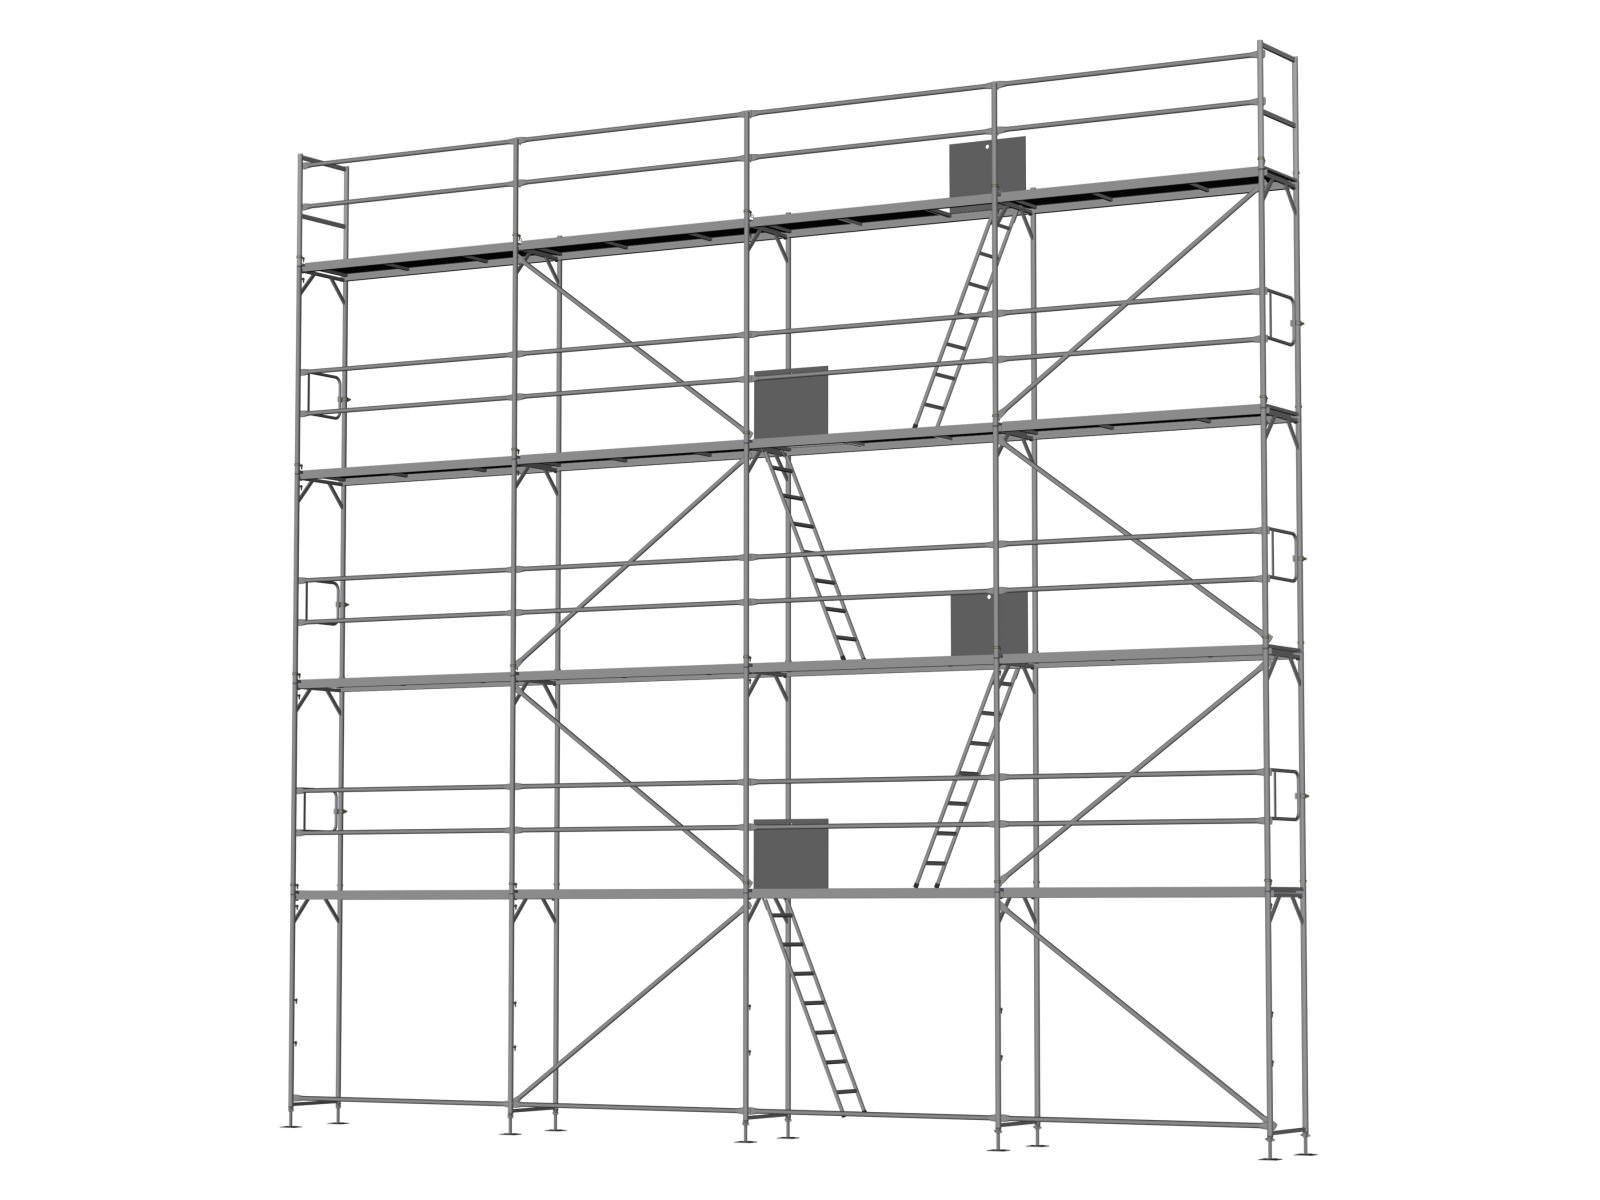 Stahl Traufseitengerüst 100 qm - 2,5 m Felder - 10 m lang - Basis-Gerüst inkl. Aufstieg & Befestigung